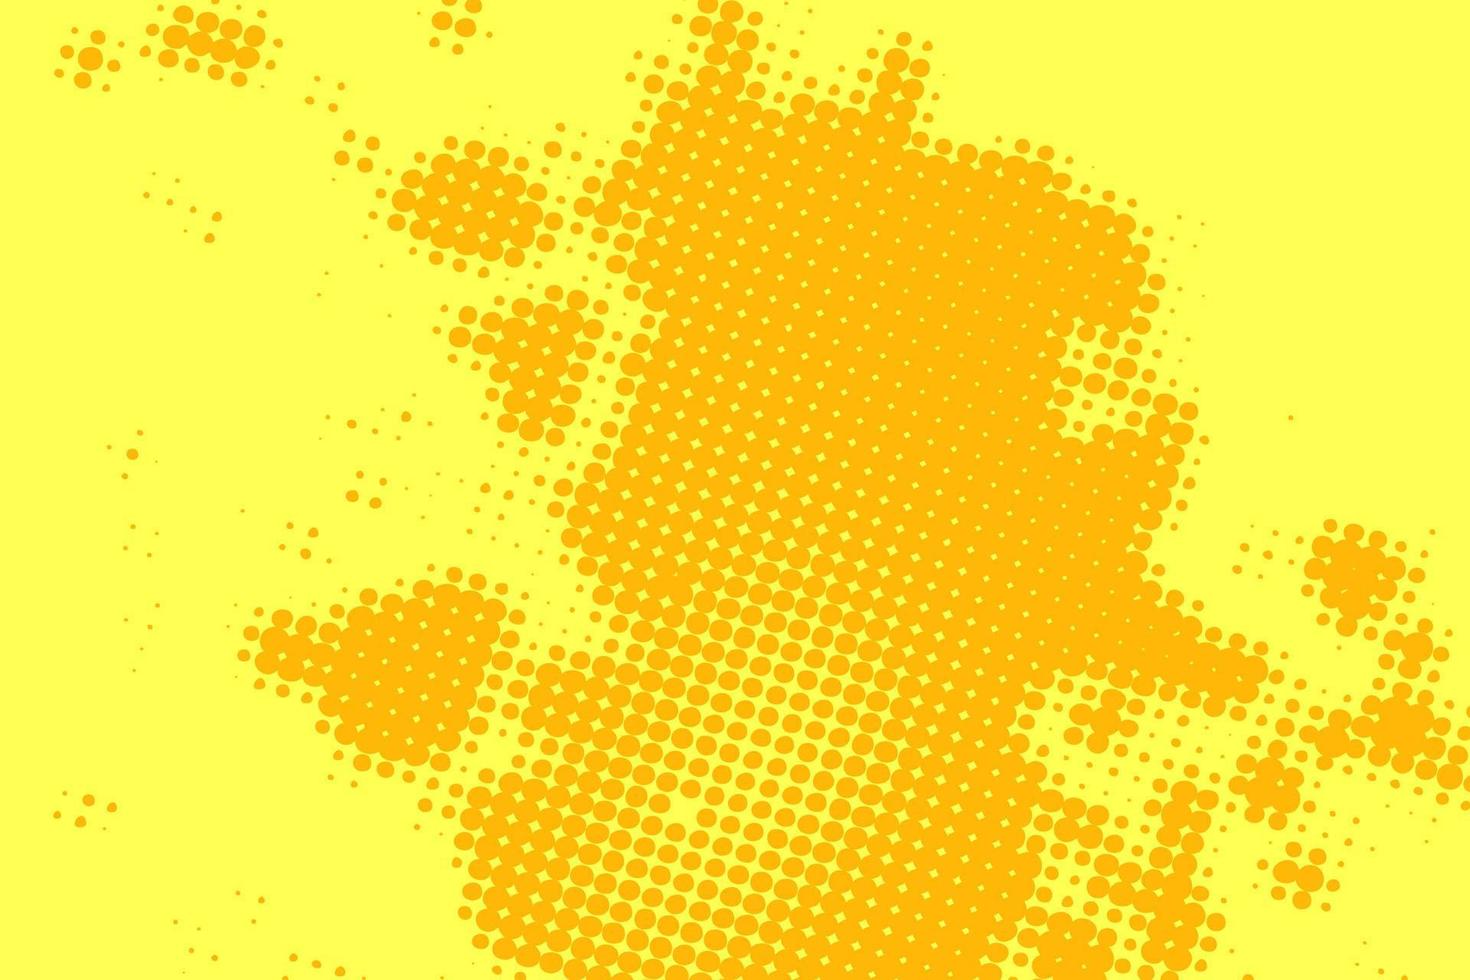 giallo arancione mezzitoni sfondo casuale motivo punteggiato, punto, cerchi. trama di arte moderna vettoriale per poster, biglietti da visita, copertina, mock-up di etichette, layout di adesivi